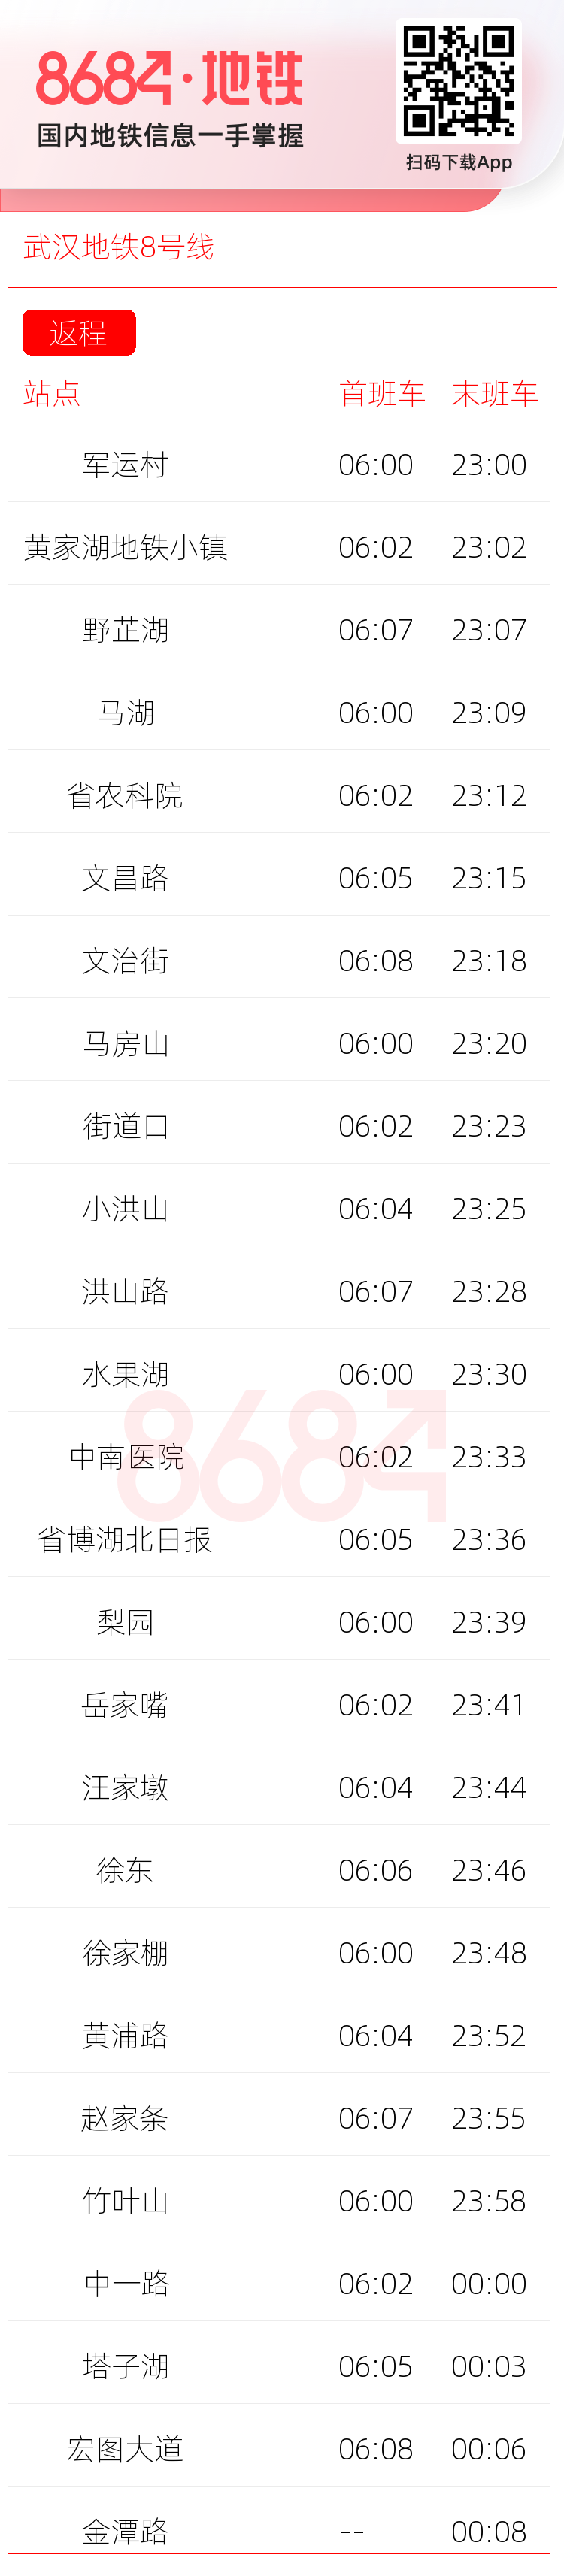 武汉地铁8号线运营时间表